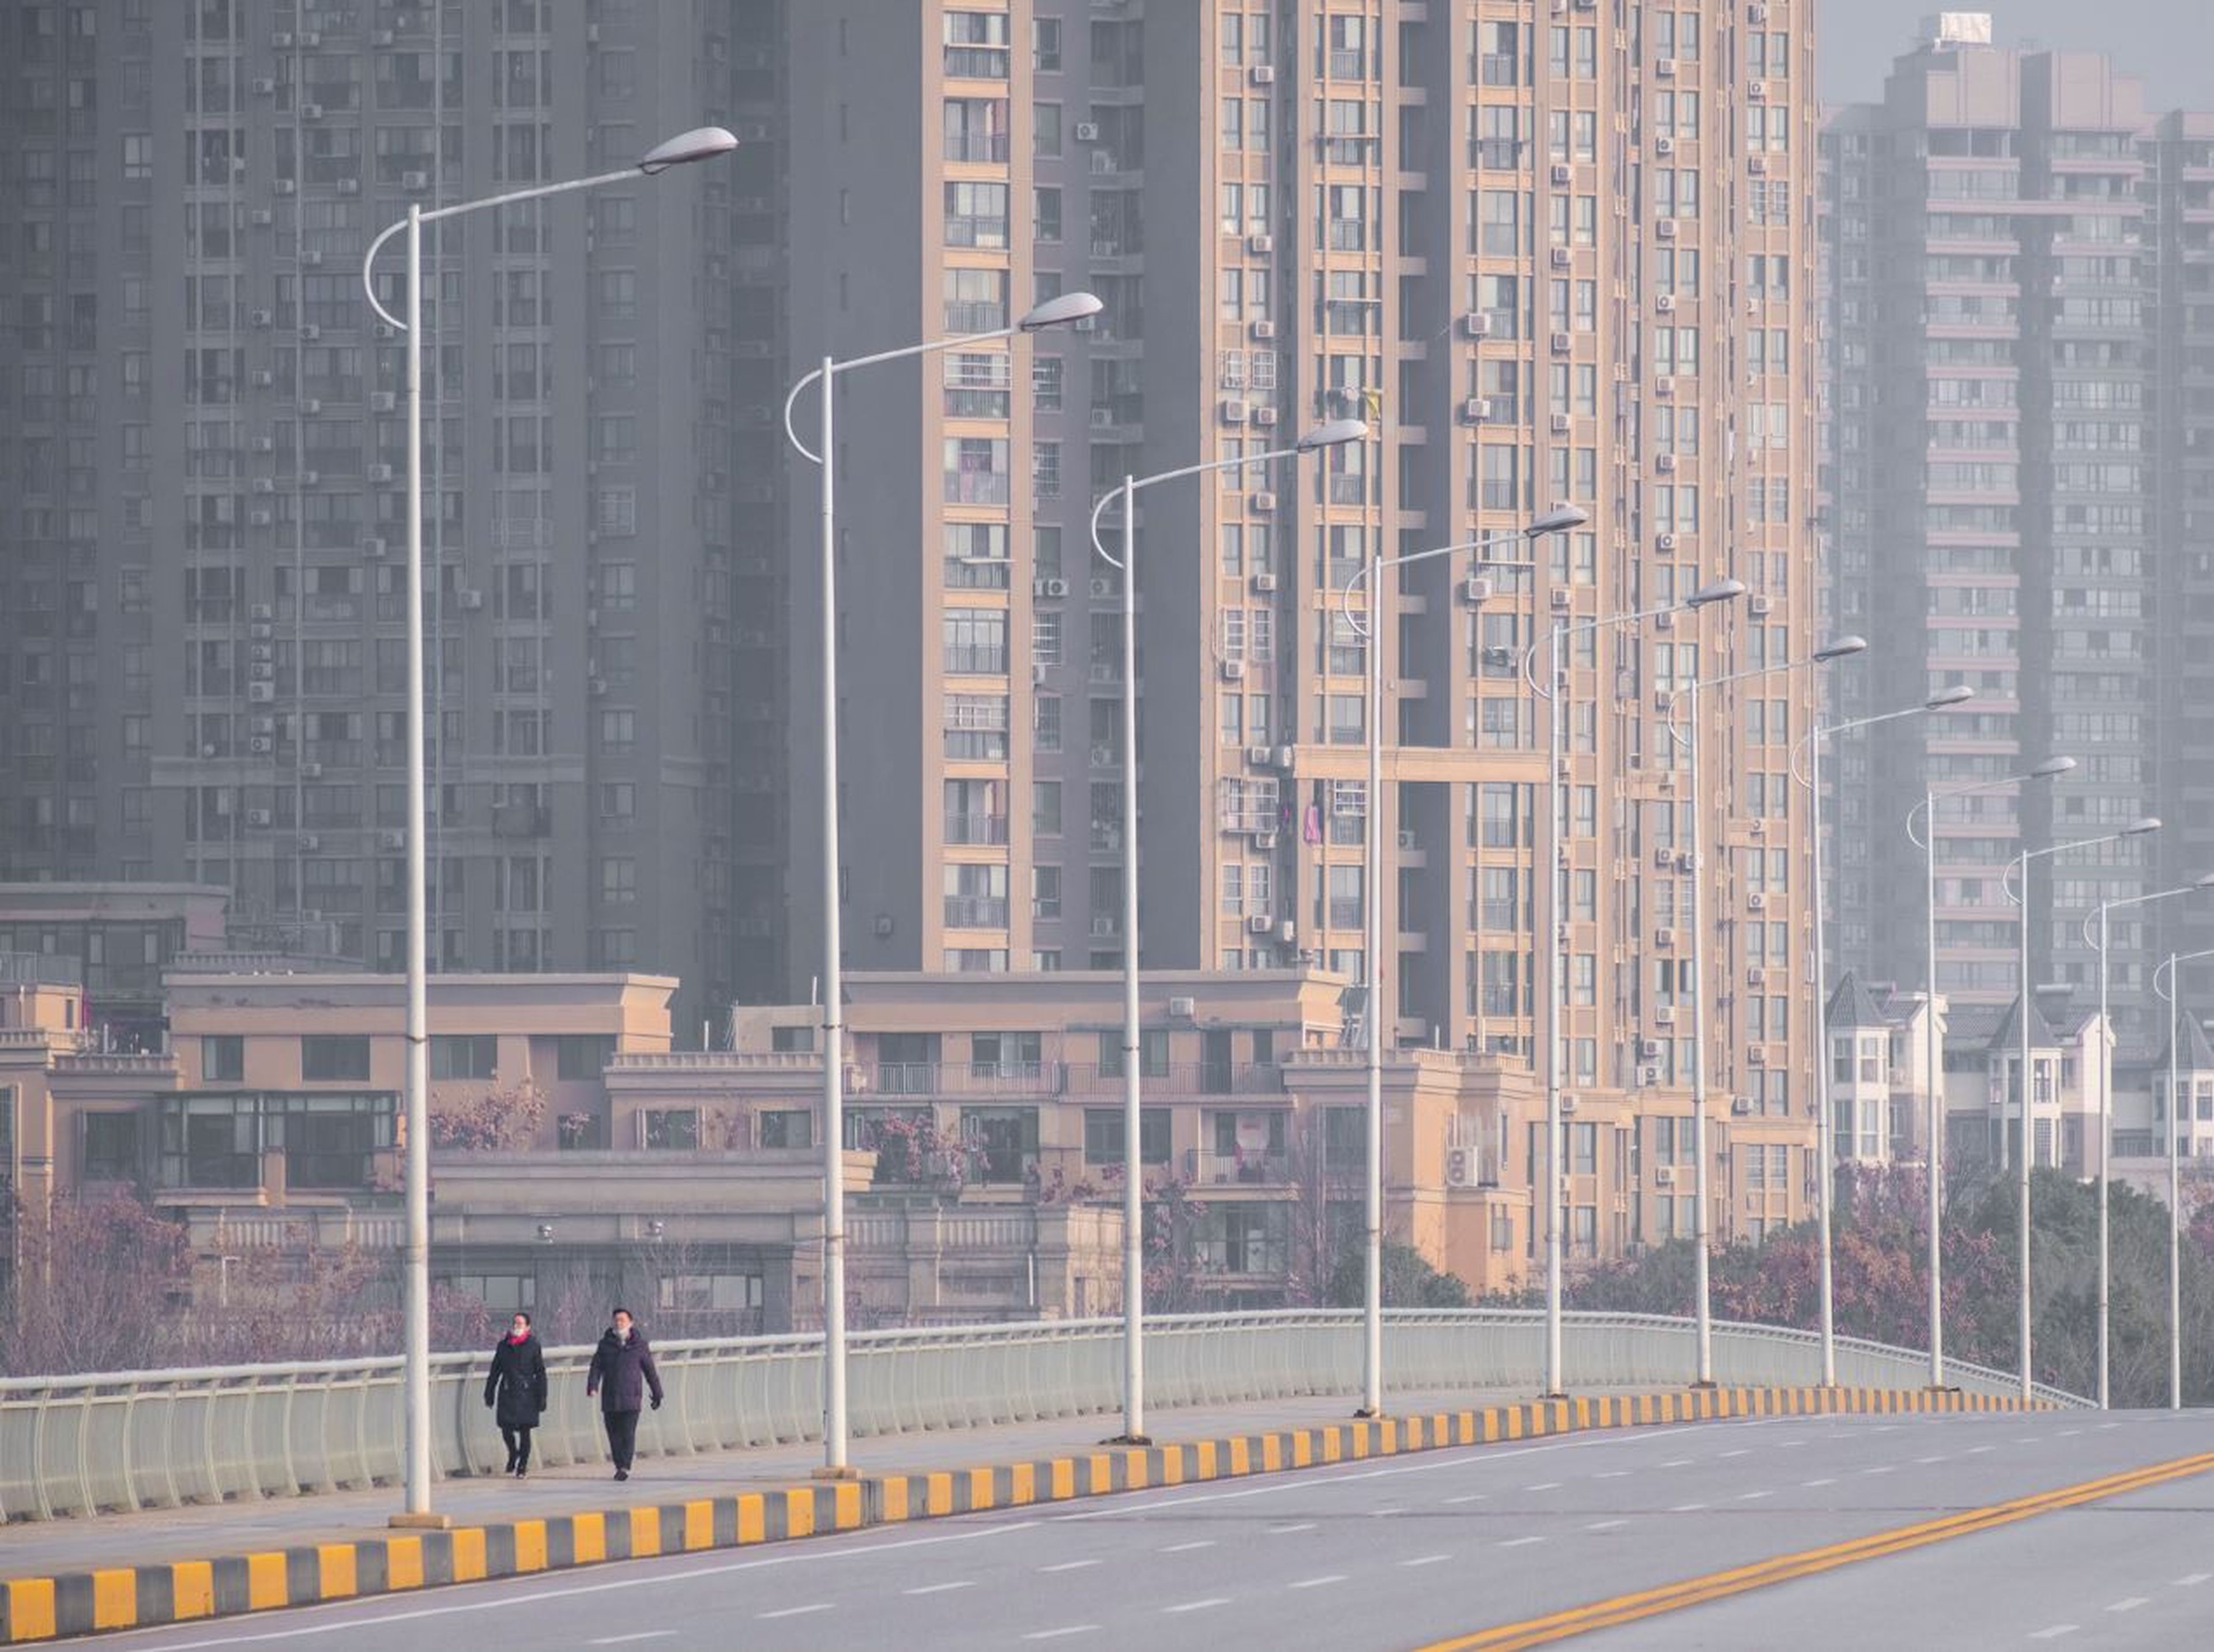 Dos personas caminan por la calle en Wuhan portando máscaras protectoras.